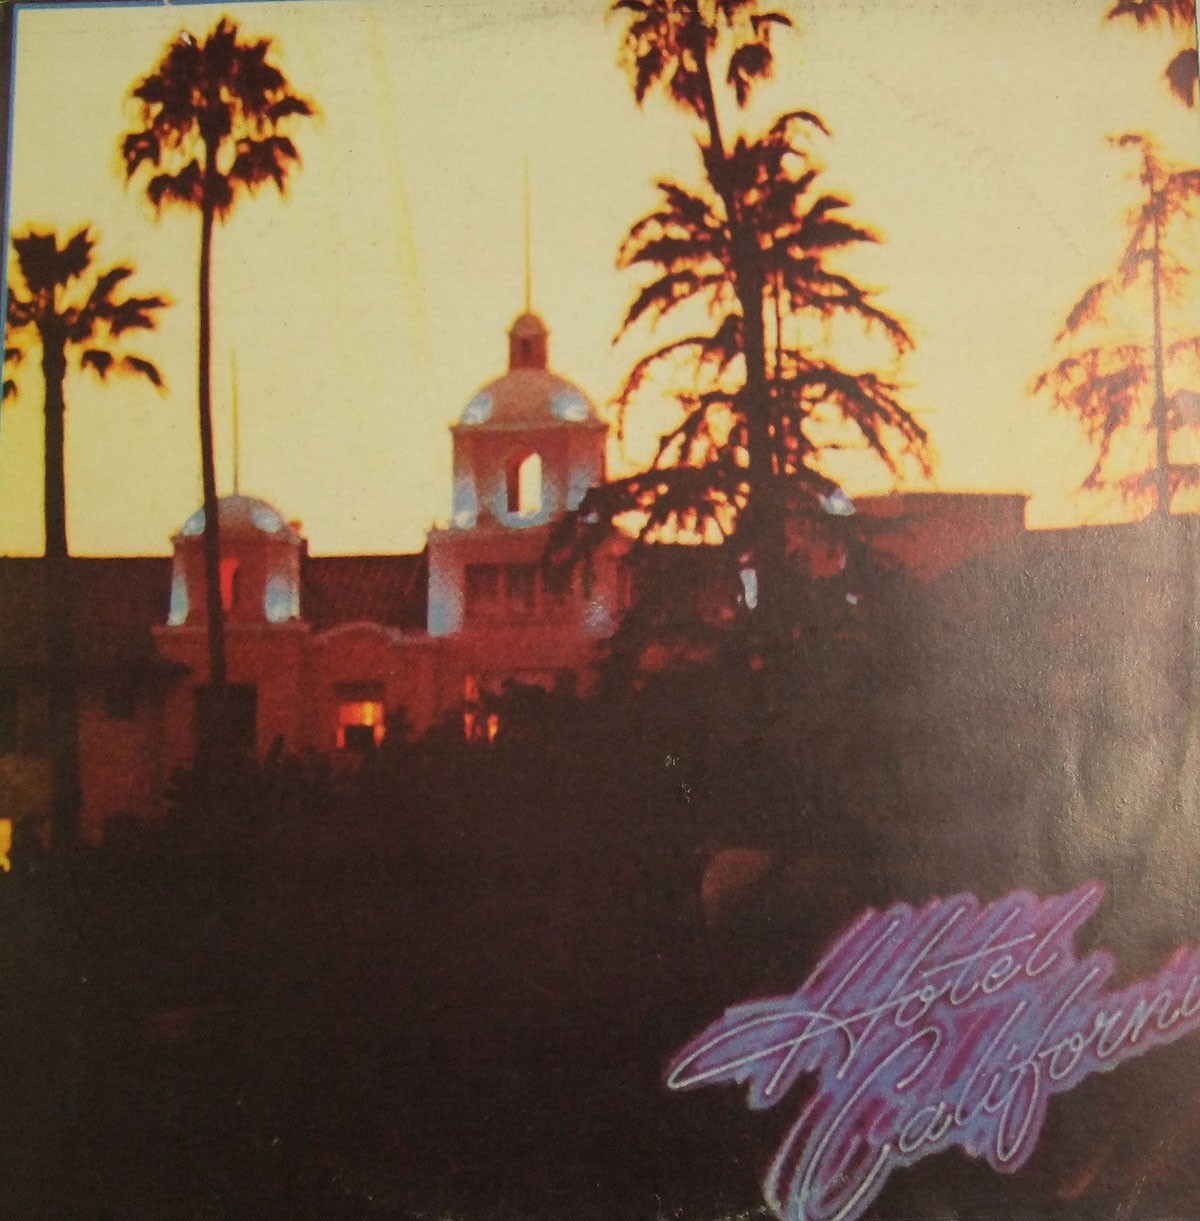 Portada del álbum "Hotel California" de los Eagles